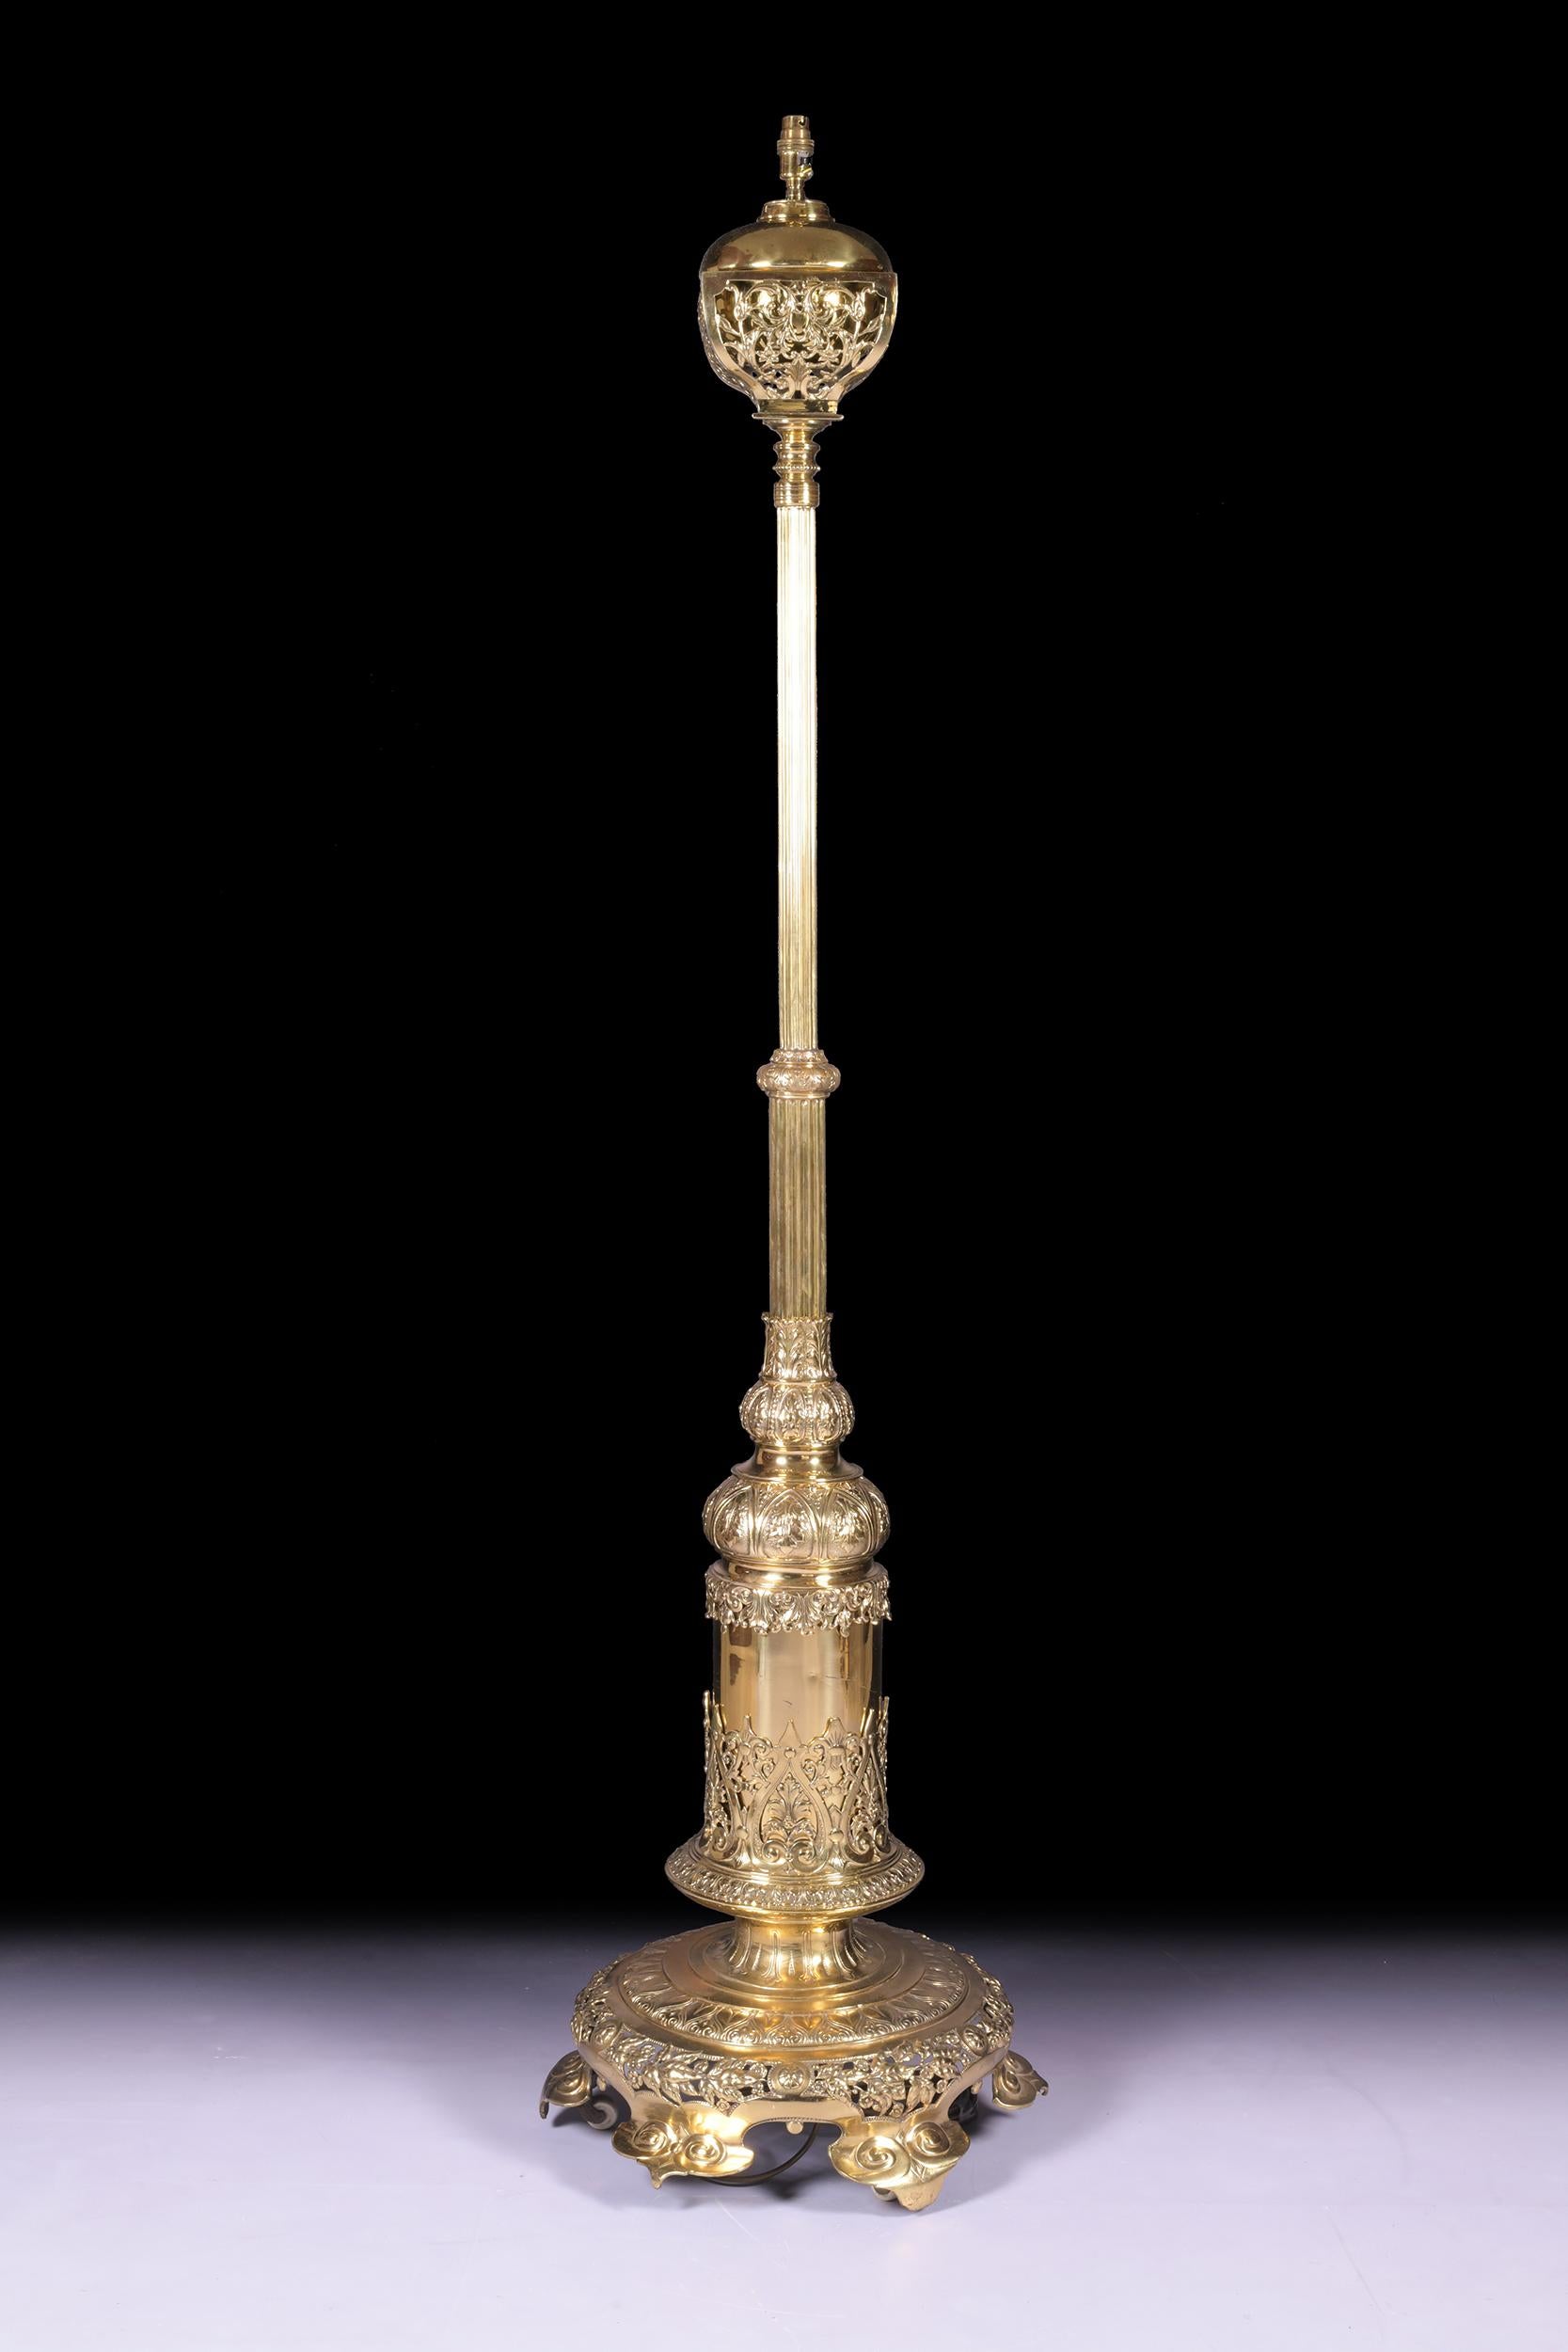 Une lampe standard en laiton du XIXe siècle de qualité exceptionnelle. Ce lampadaire télescopique victorien en laiton, très attrayant et de qualité pour les expositions, est désormais transformé en électricité.
Cette lampe présente une colonne